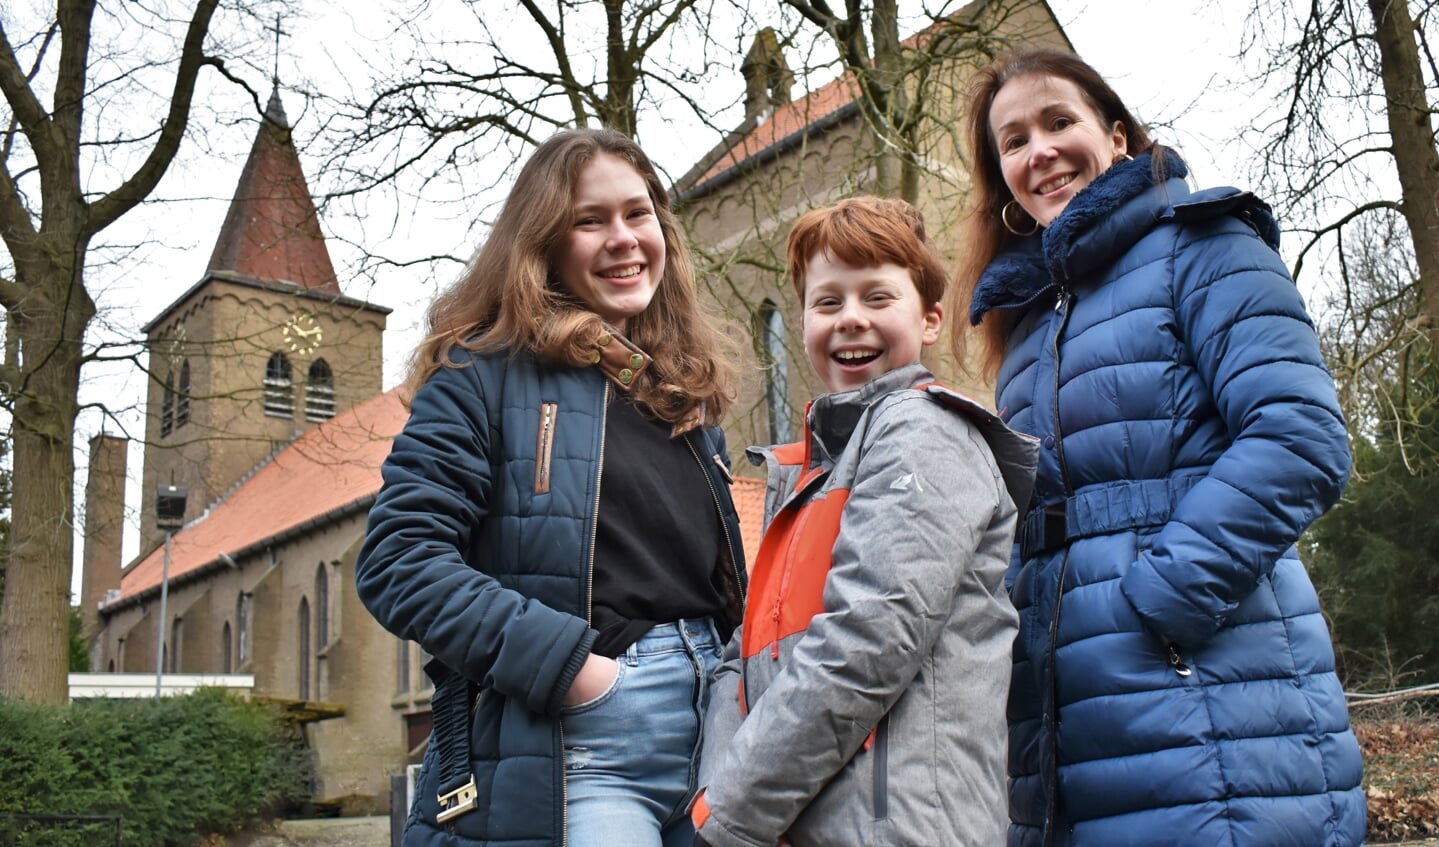 De kleinkinderen Elise-May (14) en David (11) en dochter Wendy bij de Heilige Familiekerk in Soest-Zuid, waar hun (groot)moeder Francine uit Australië opgroeide.